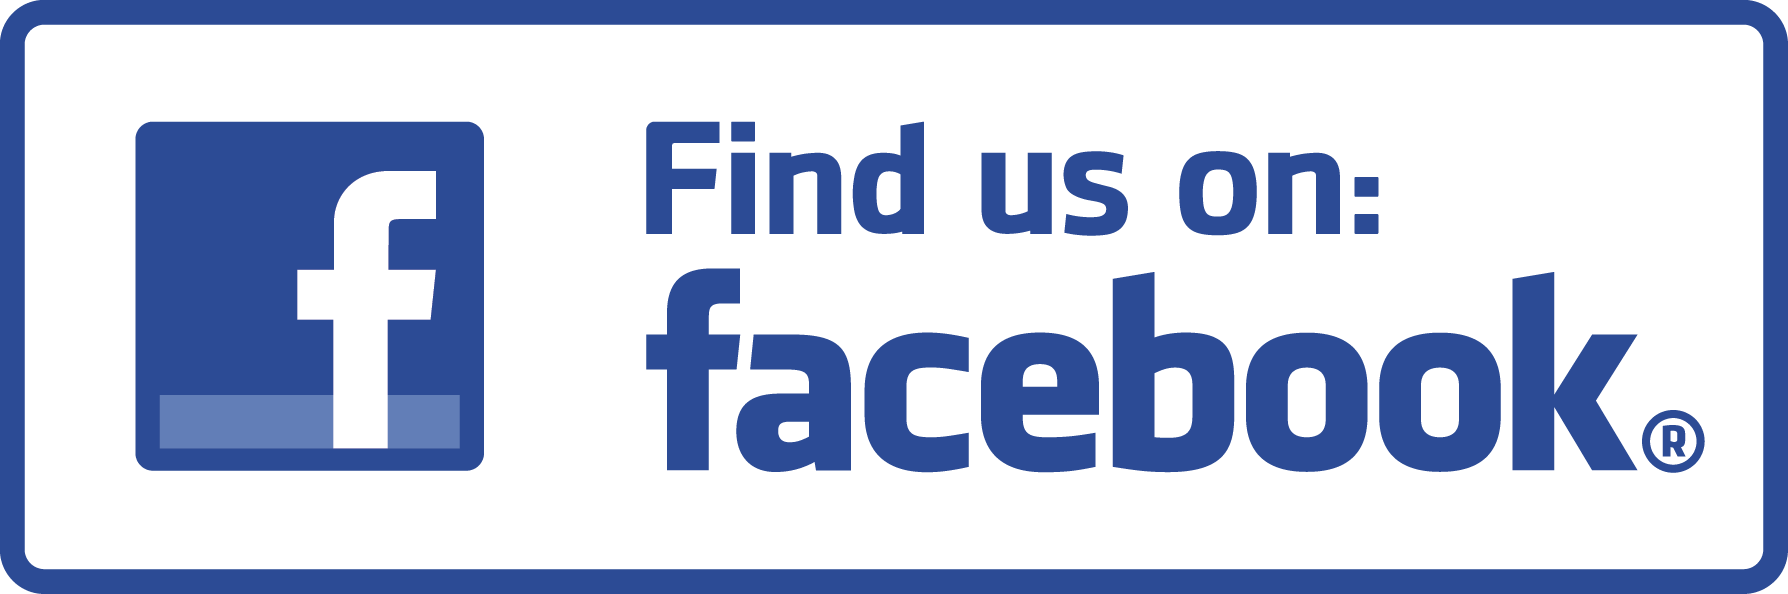 fnl facebook logo